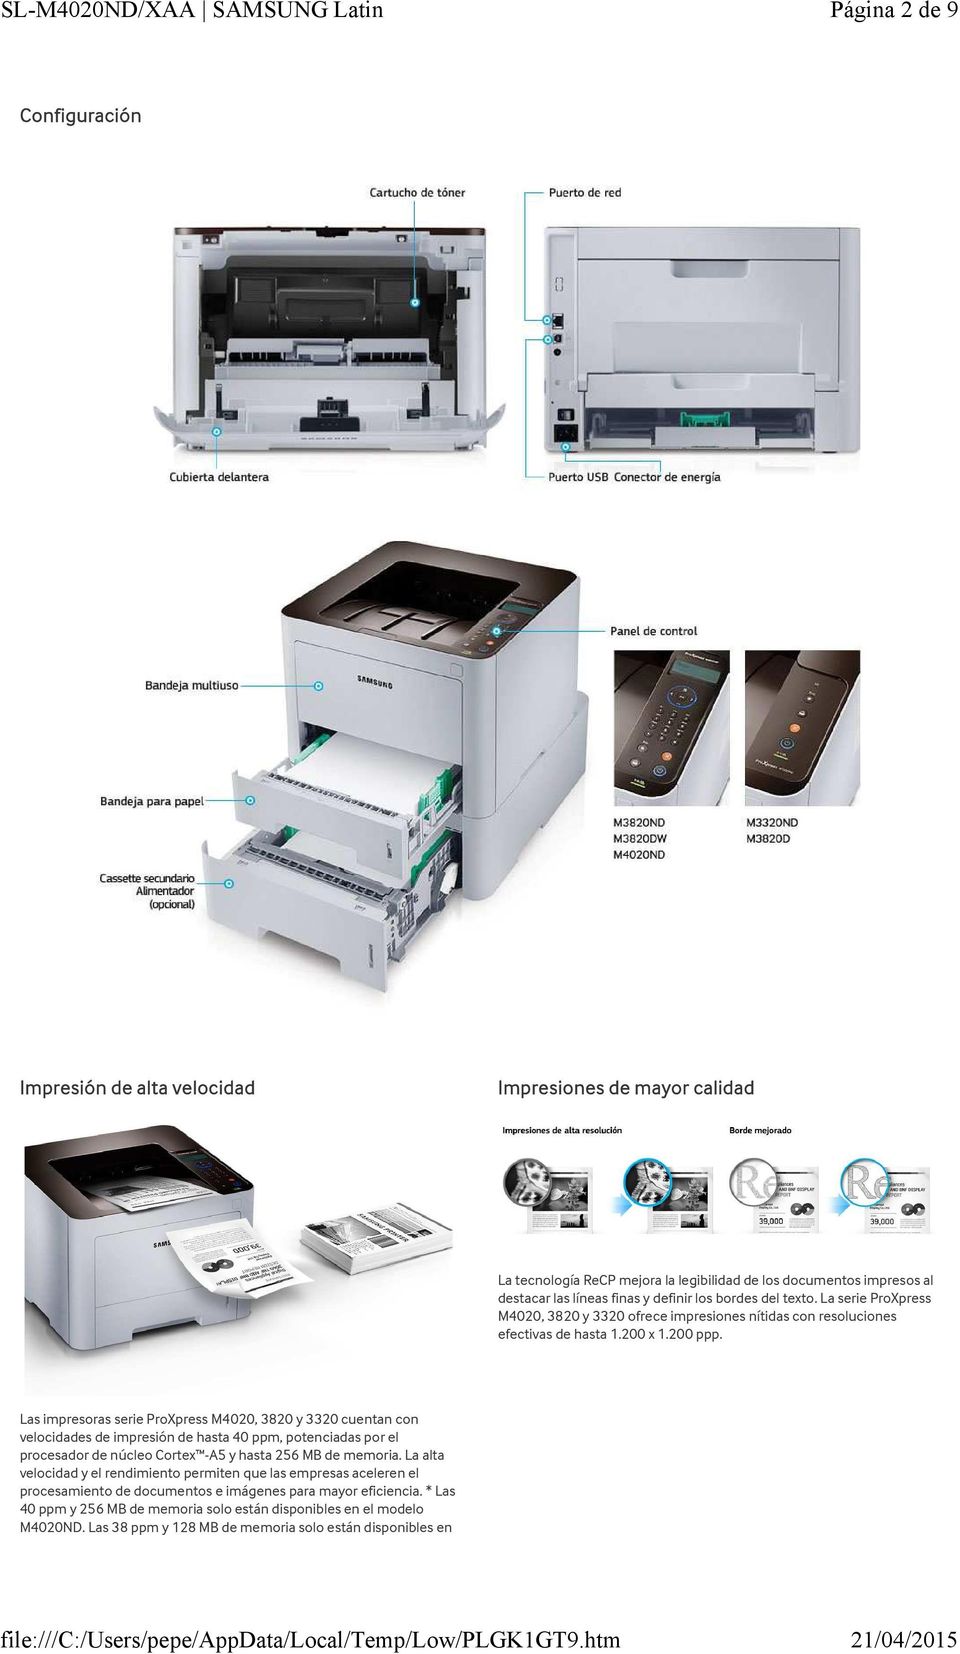 Las impresoras serie ProXpress M4020, 3820 y 3320 cuentan con velocidades de impresión de hasta 40 ppm, potenciadas por el procesador de núcleo Cortex -A5 y hasta 256 MB de memoria.